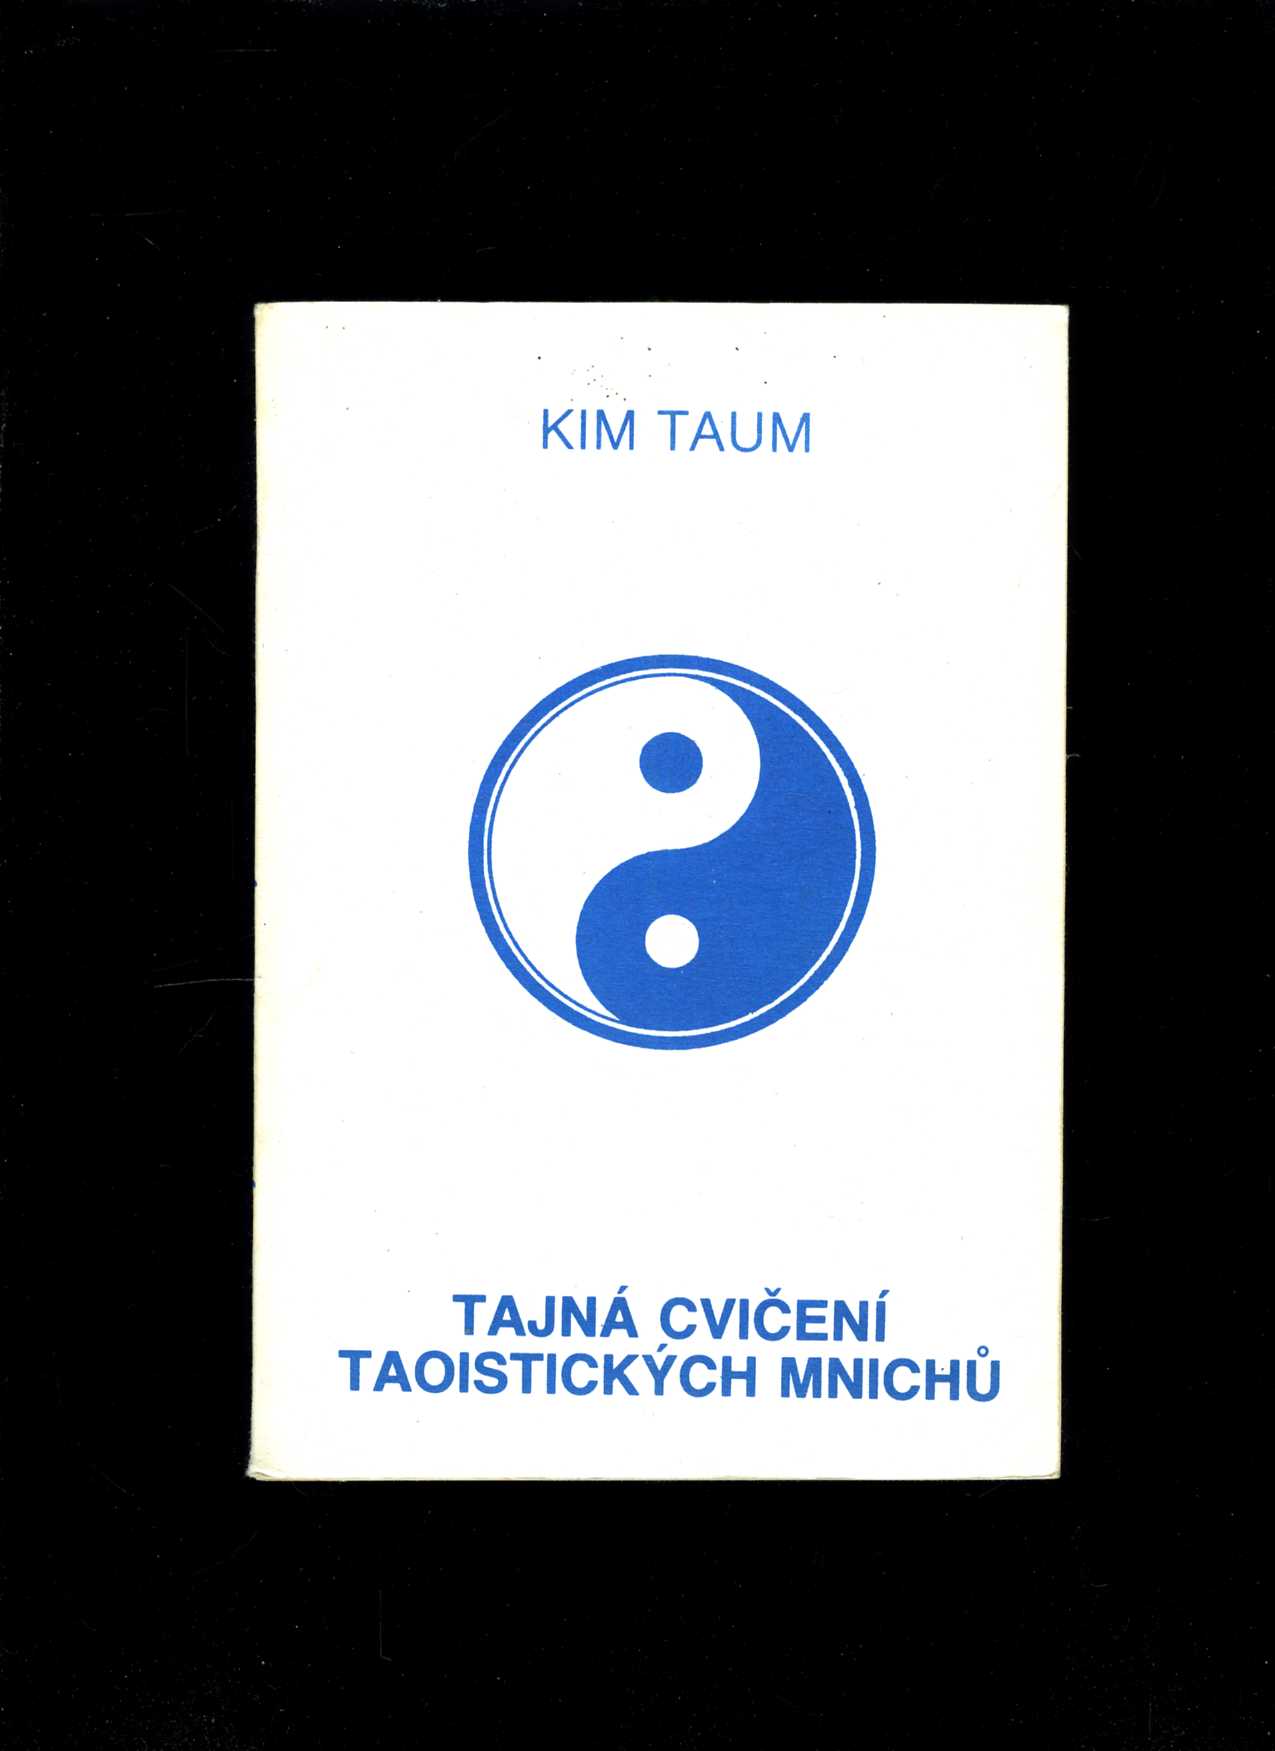 Tajná cvičení taoistických mnichů (Kim Taum)